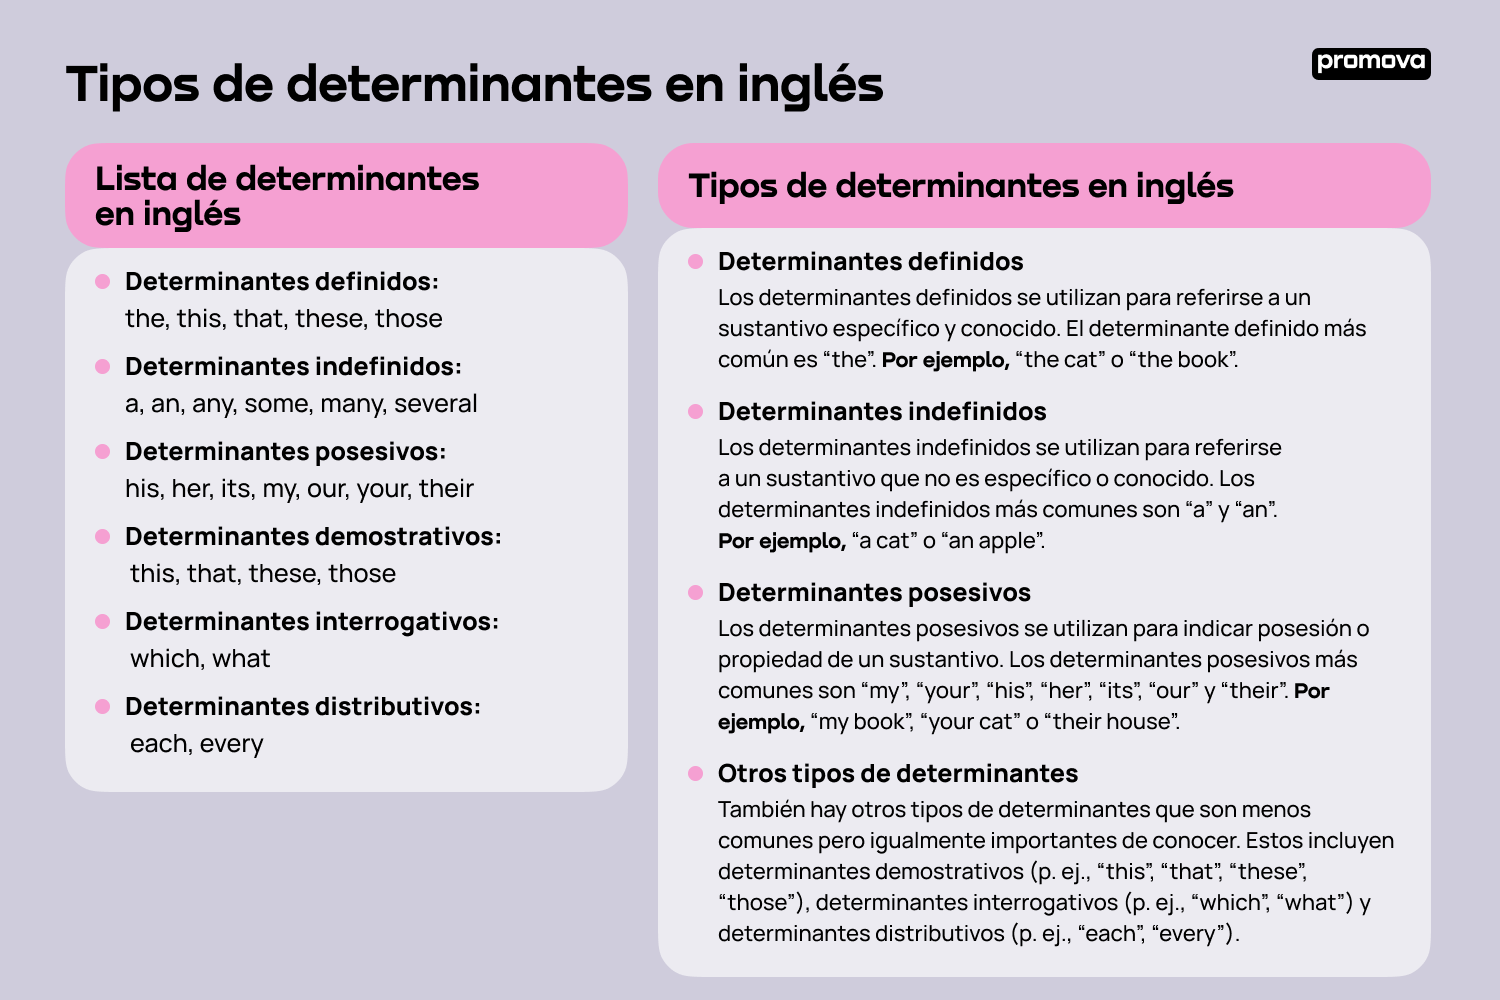 Descubre los tipos de determinantes en inglés: Una guía completa